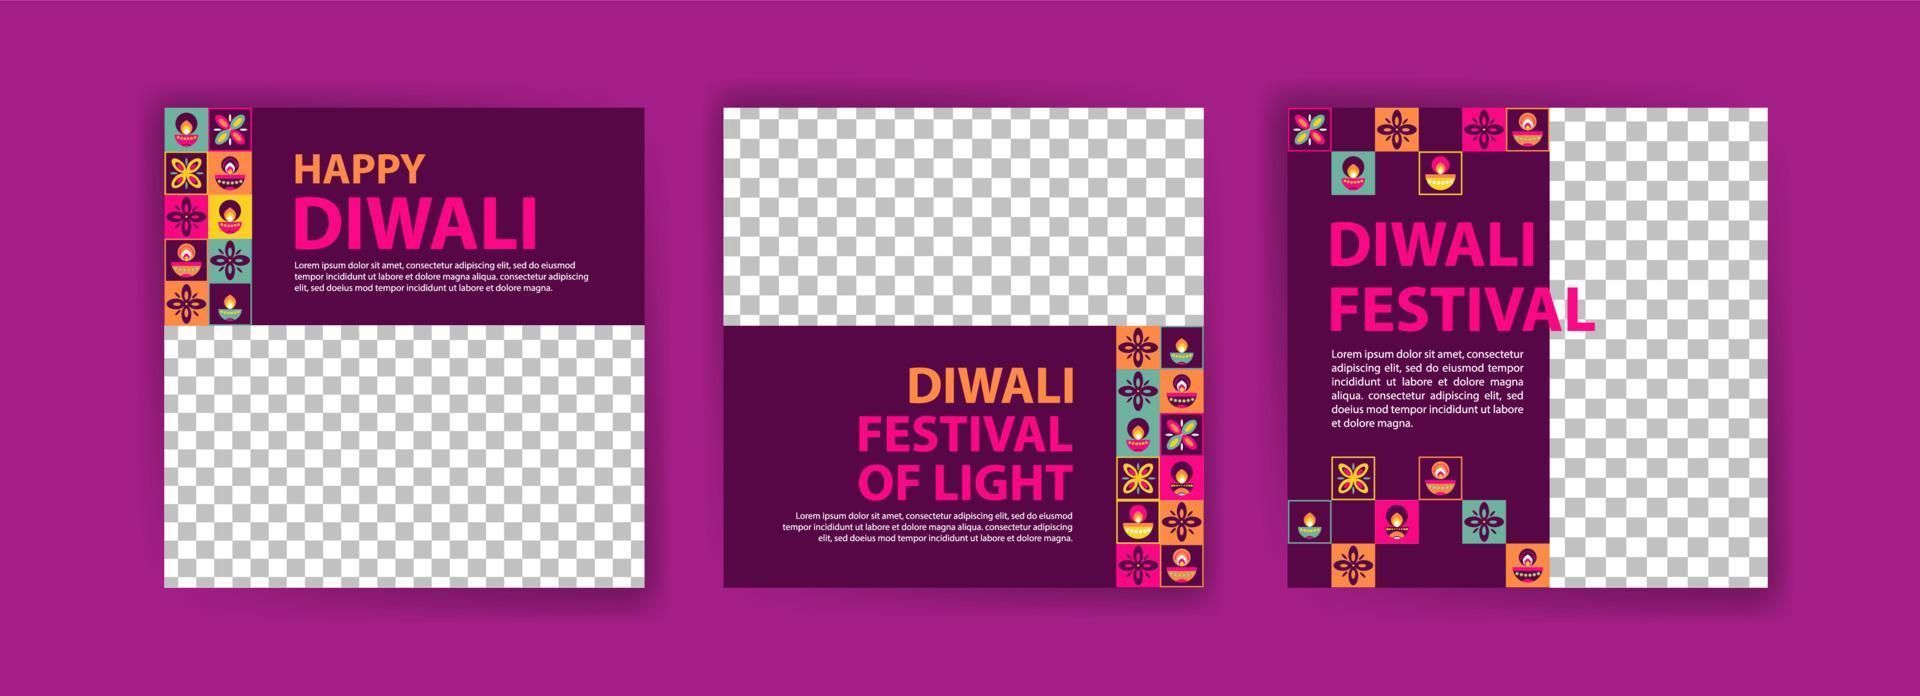 modèle de publication sur les réseaux sociaux pour la célébration de diwali. affiche néo géométrique colorée pour la célébration de diwali. vecteur